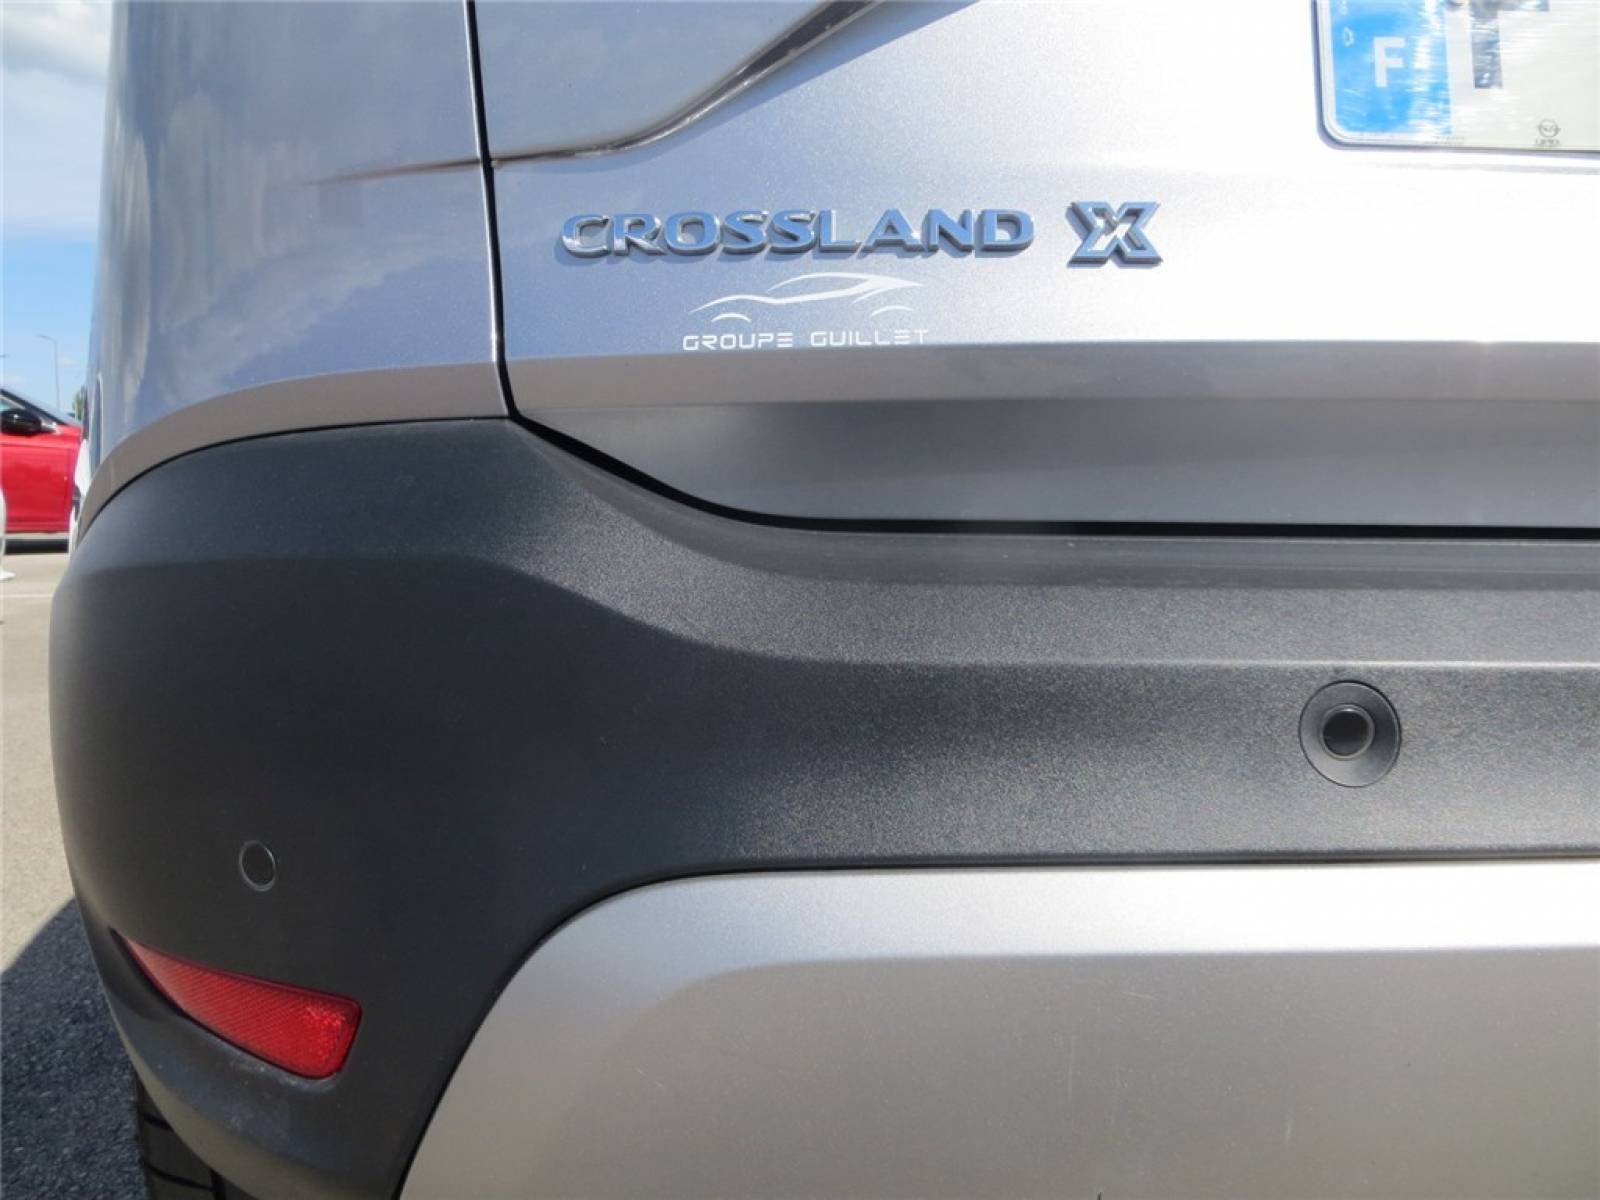 OPEL Crossland X 1.2 Turbo 130 ch - véhicule d'occasion - Groupe Guillet - Hall de l’Automobile – Chalon-sur-Saône - 71380 - Saint-Marcel - 13